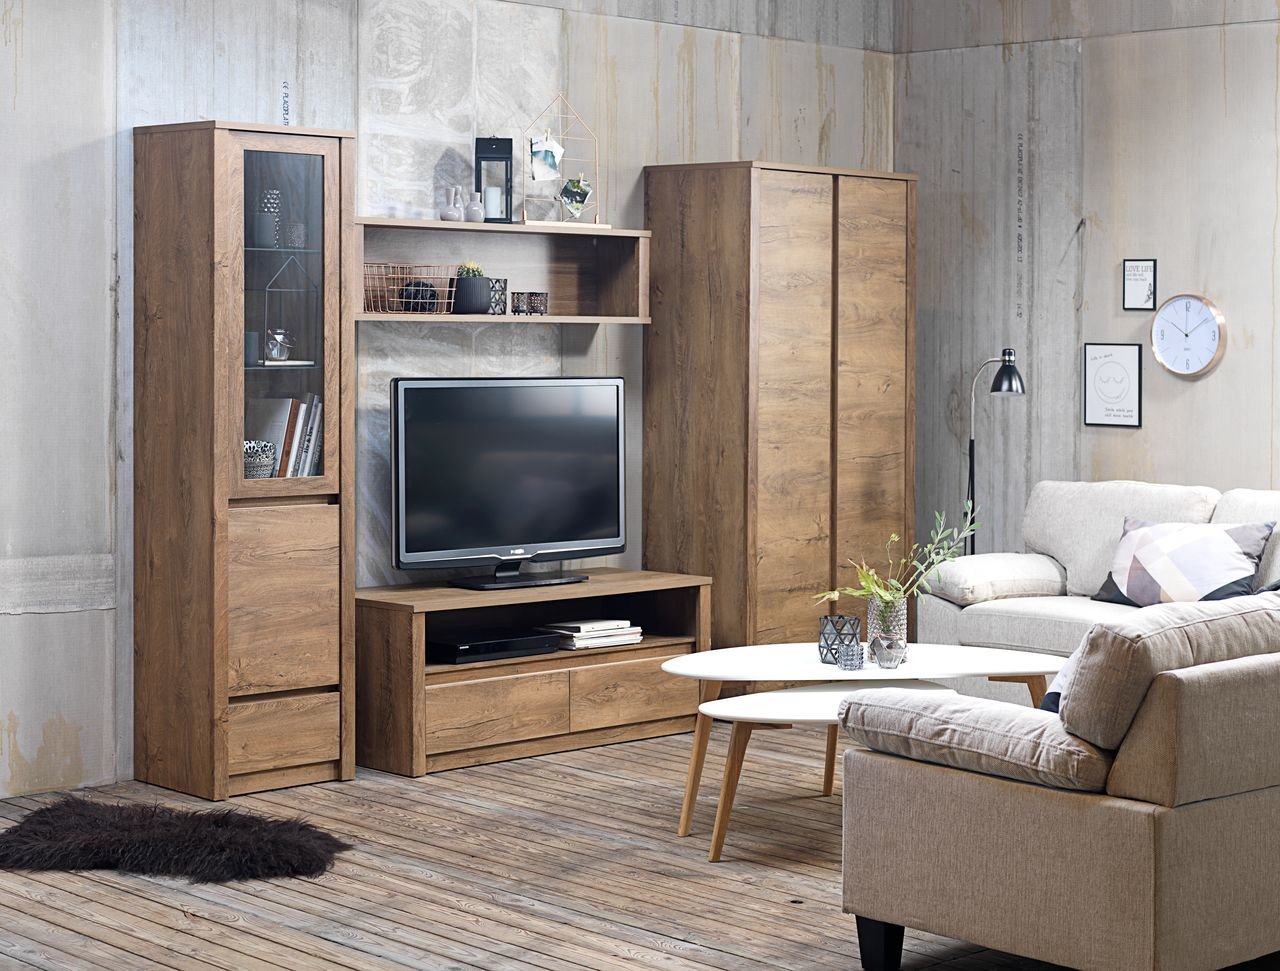 Mẫu thiết kế nội thất phòng khách bằng gỗ hiện đại, tinh tế